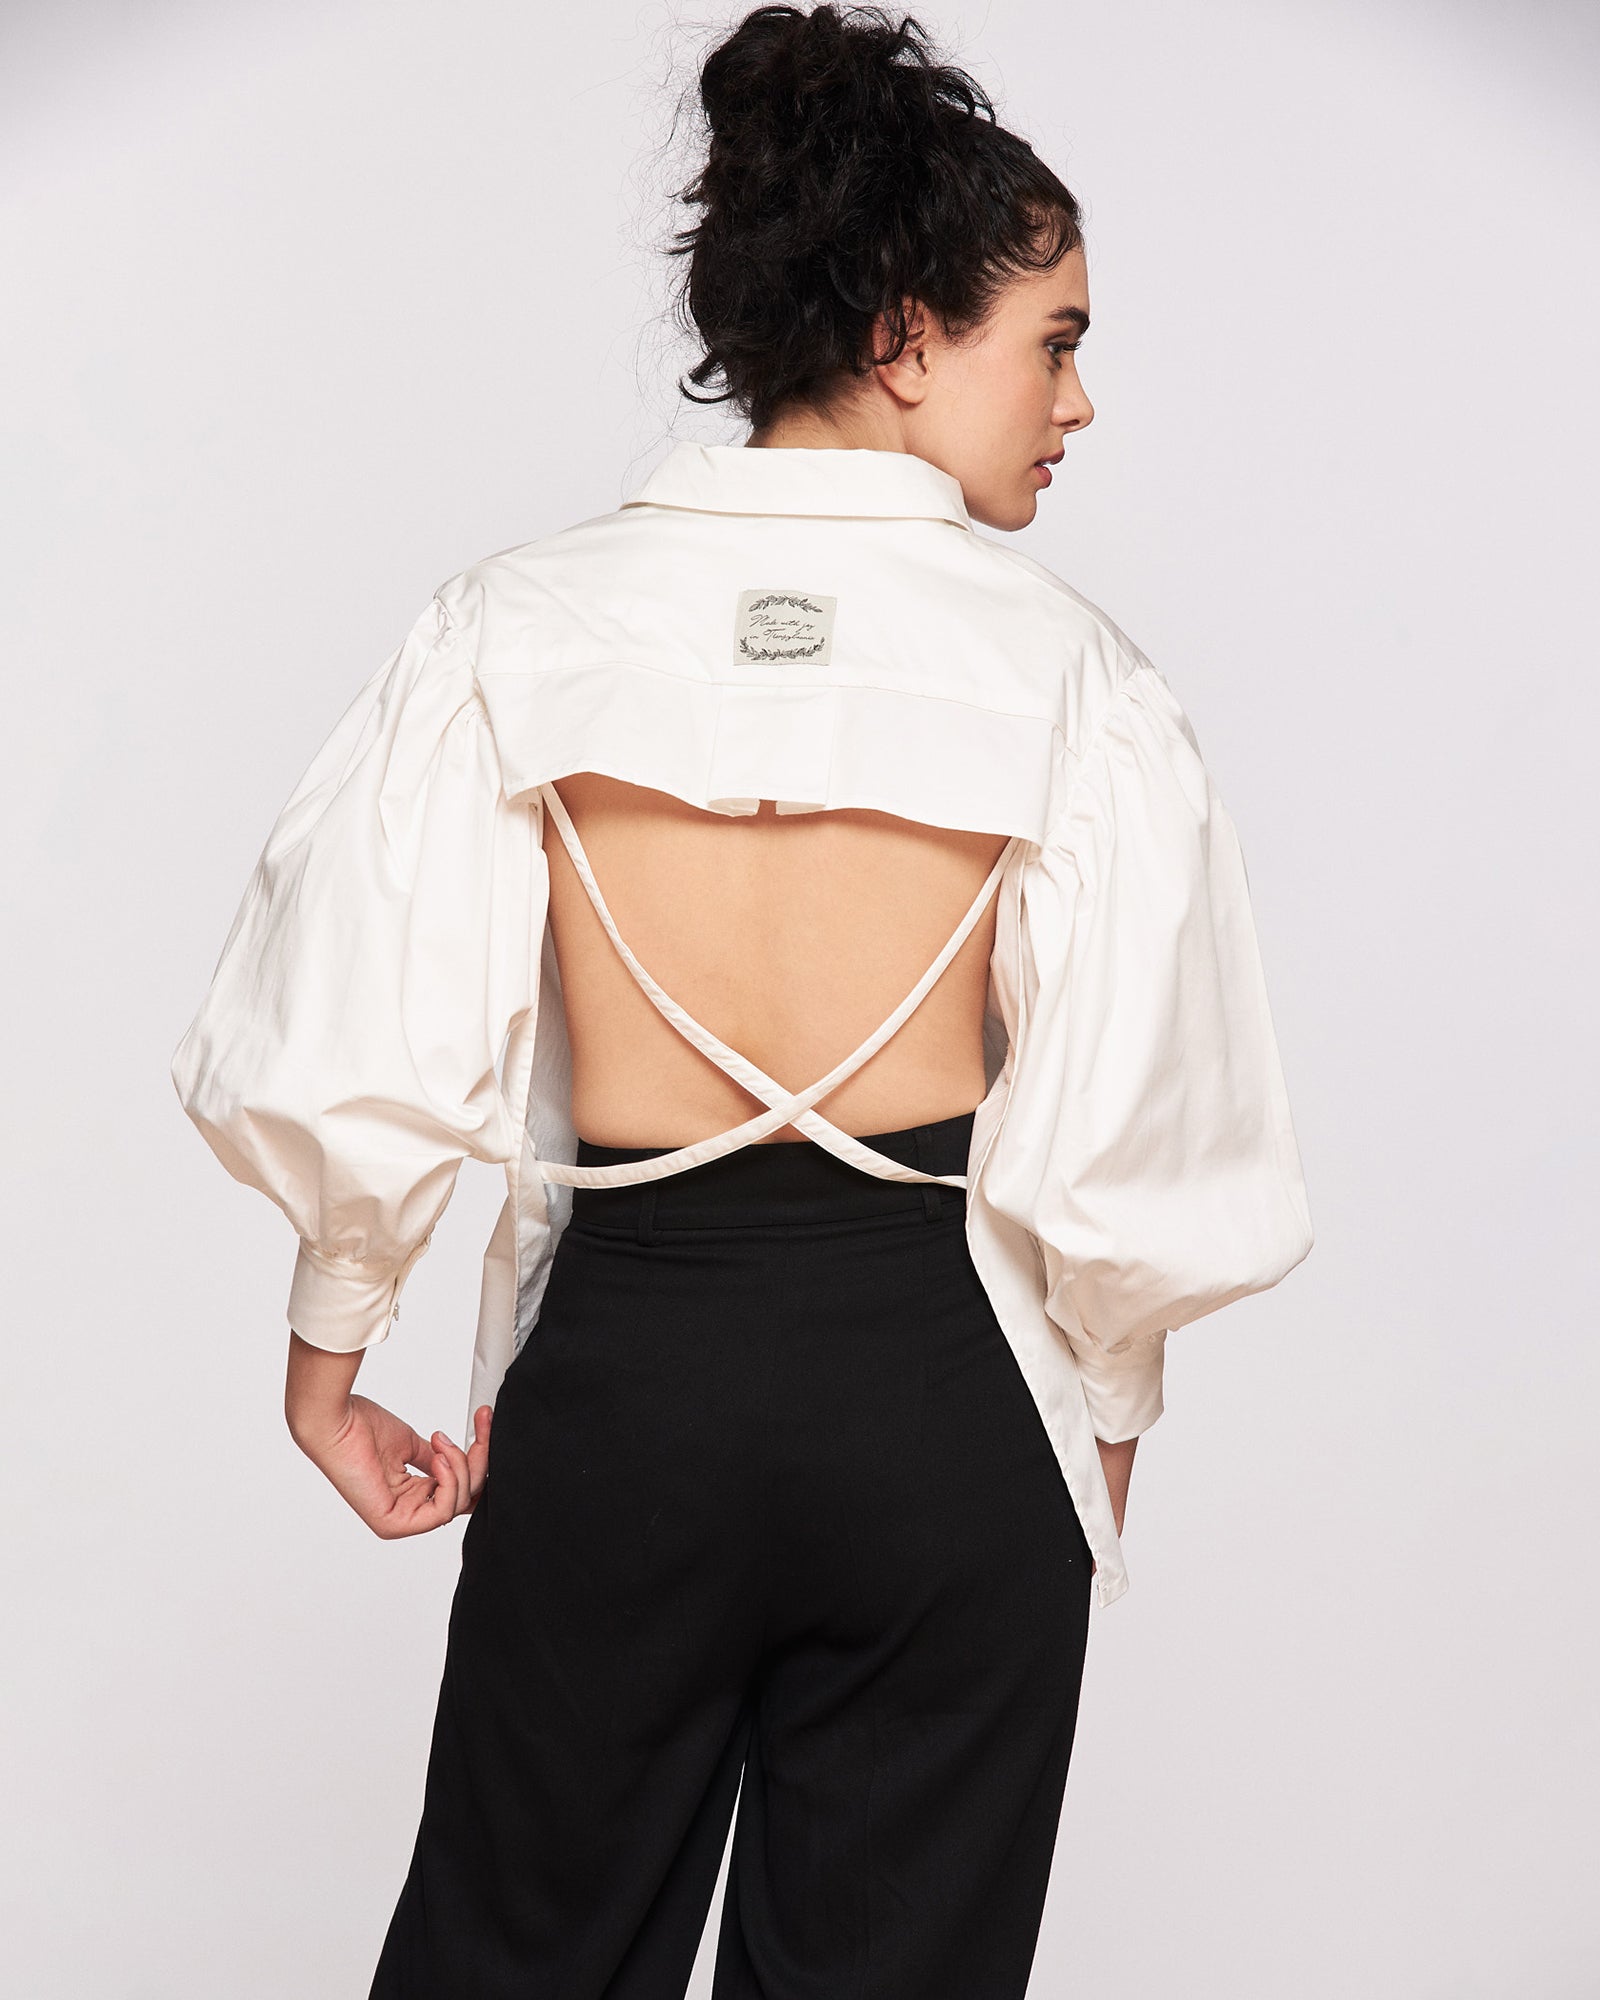 Unique women's shirt "Sexy back"